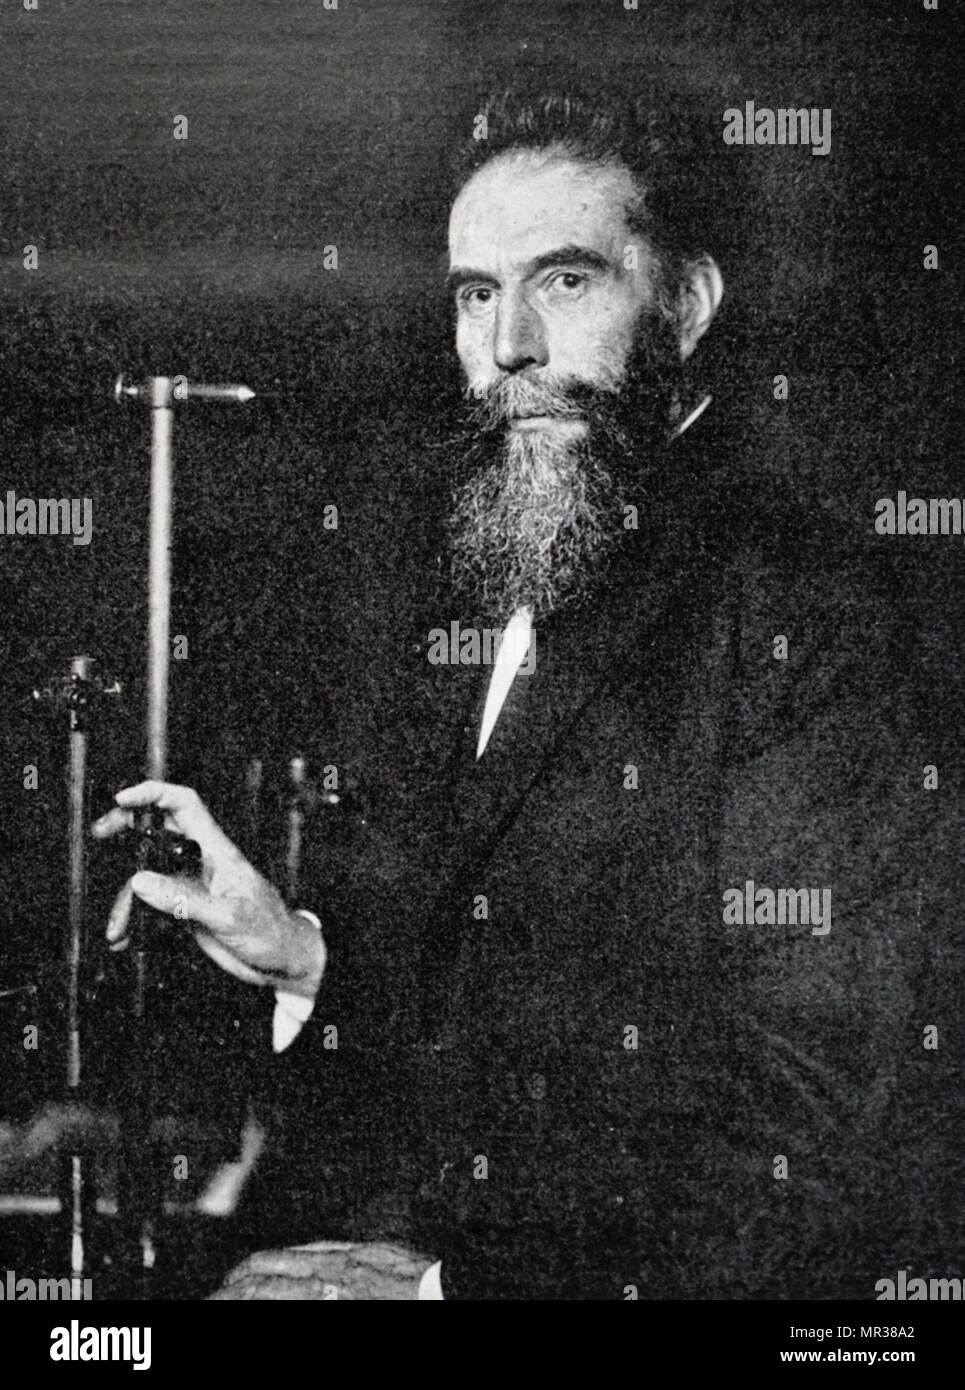 Fotografia di Wilhelm Röntgen (1845-1923) un tedesco ingegnere meccanico e fisico che prodotto e rilevata la radiazione elettromagnetica in un intervallo di lunghezza d'onda nota come raggi X di raggi Röntgen. Datata del XIX secolo Foto Stock